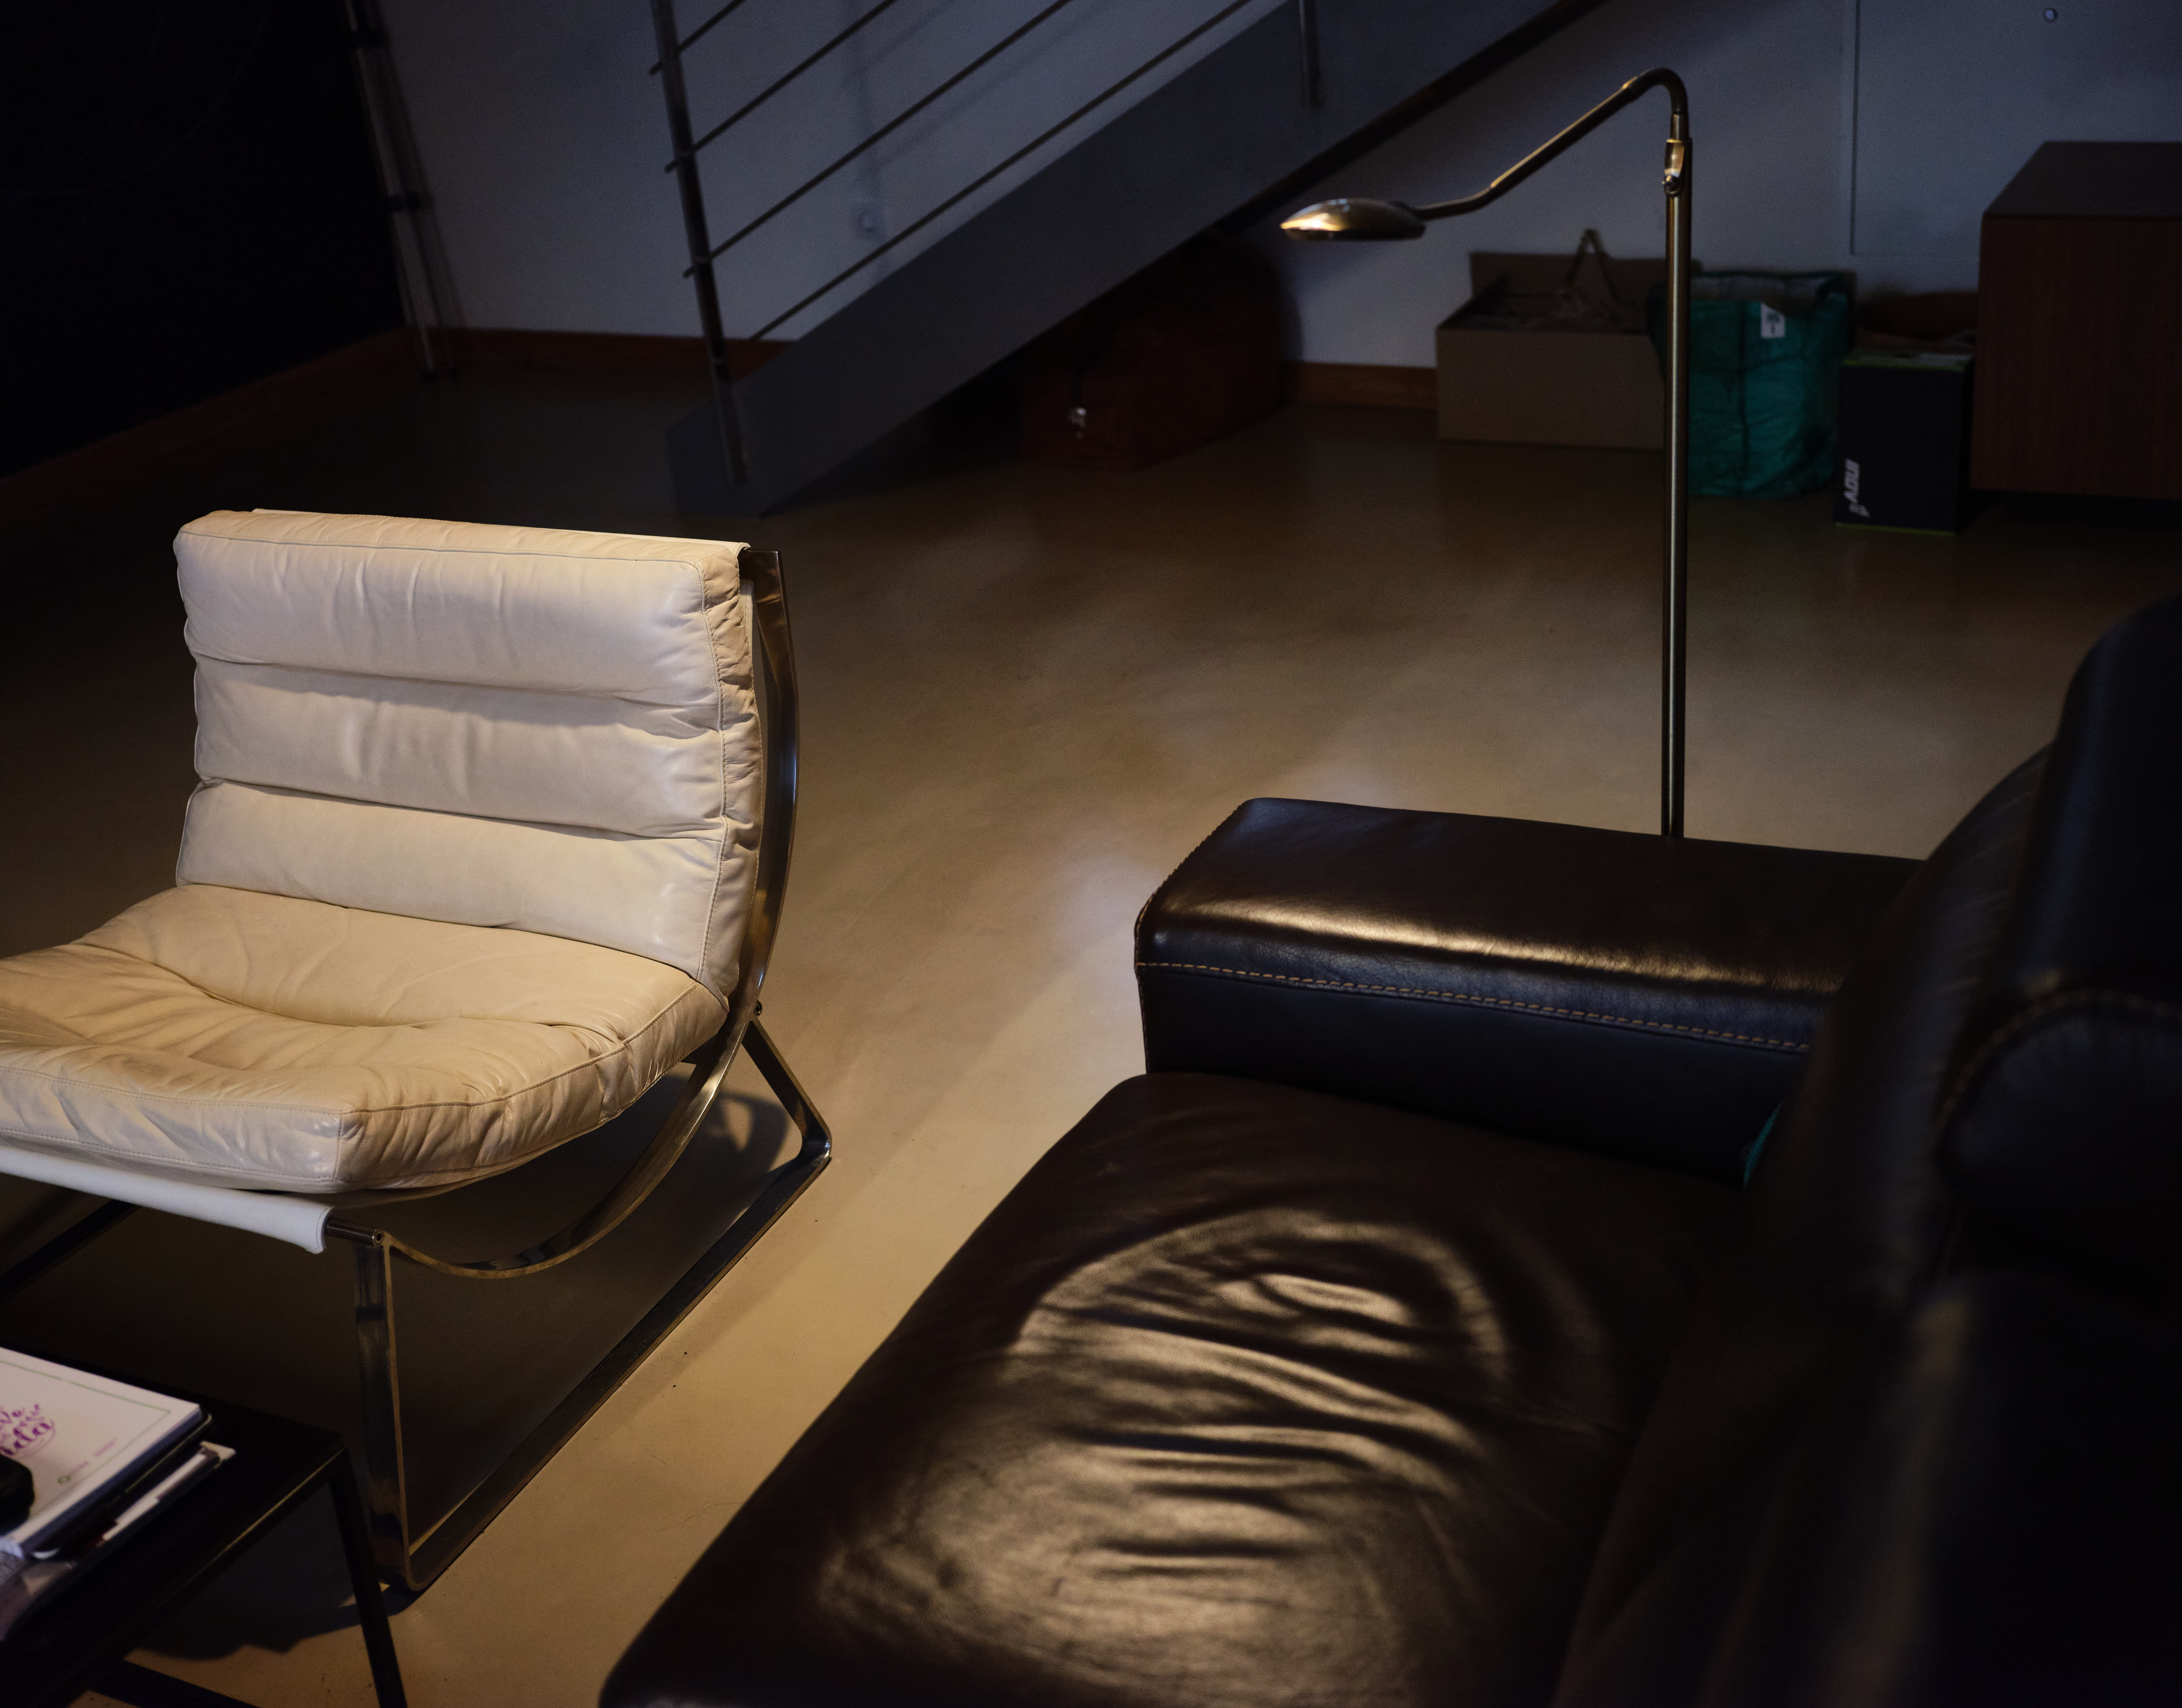 En un sótano iluminado por una lámpara se distinguen un sofá de cuero negro y una silla de metal cubierta con almohadillas blancas. Al fondo varias cajas y mochilas apiladas bajo unas escaleras de metal.